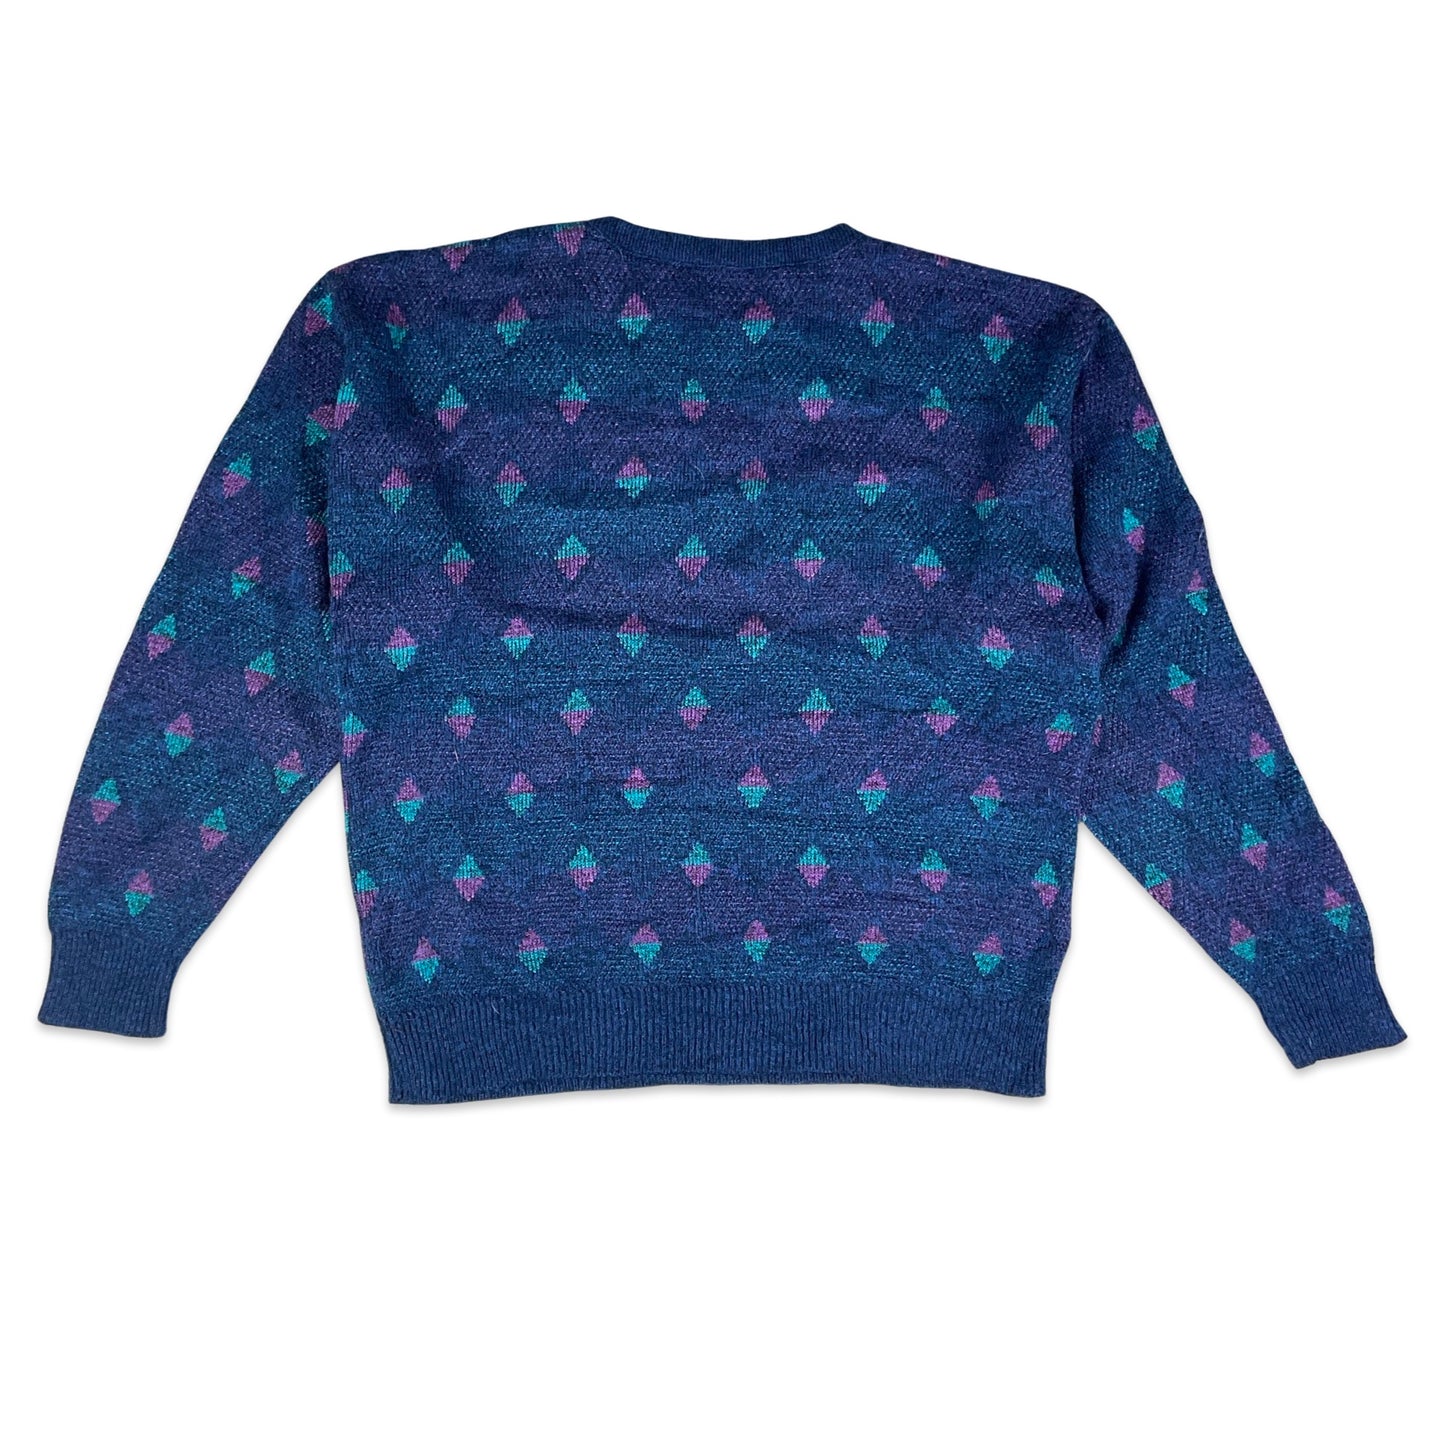 80s Blue & Purple Patterned Knit Jumper